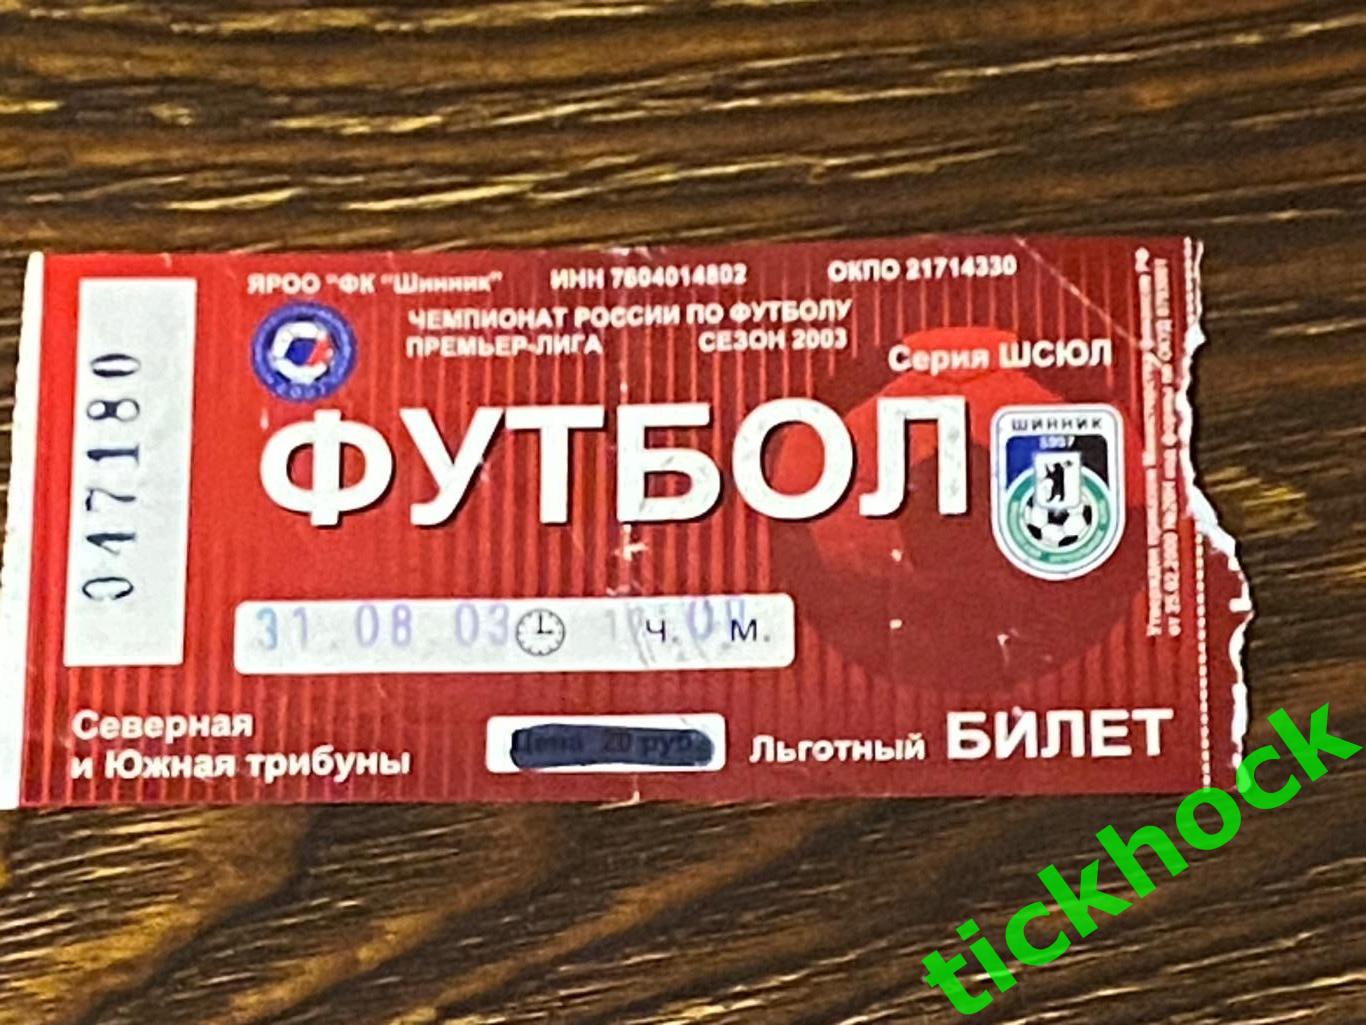 ЧР Шинник Ярославль - Спартак Москва 31.08.2003 - SY 2